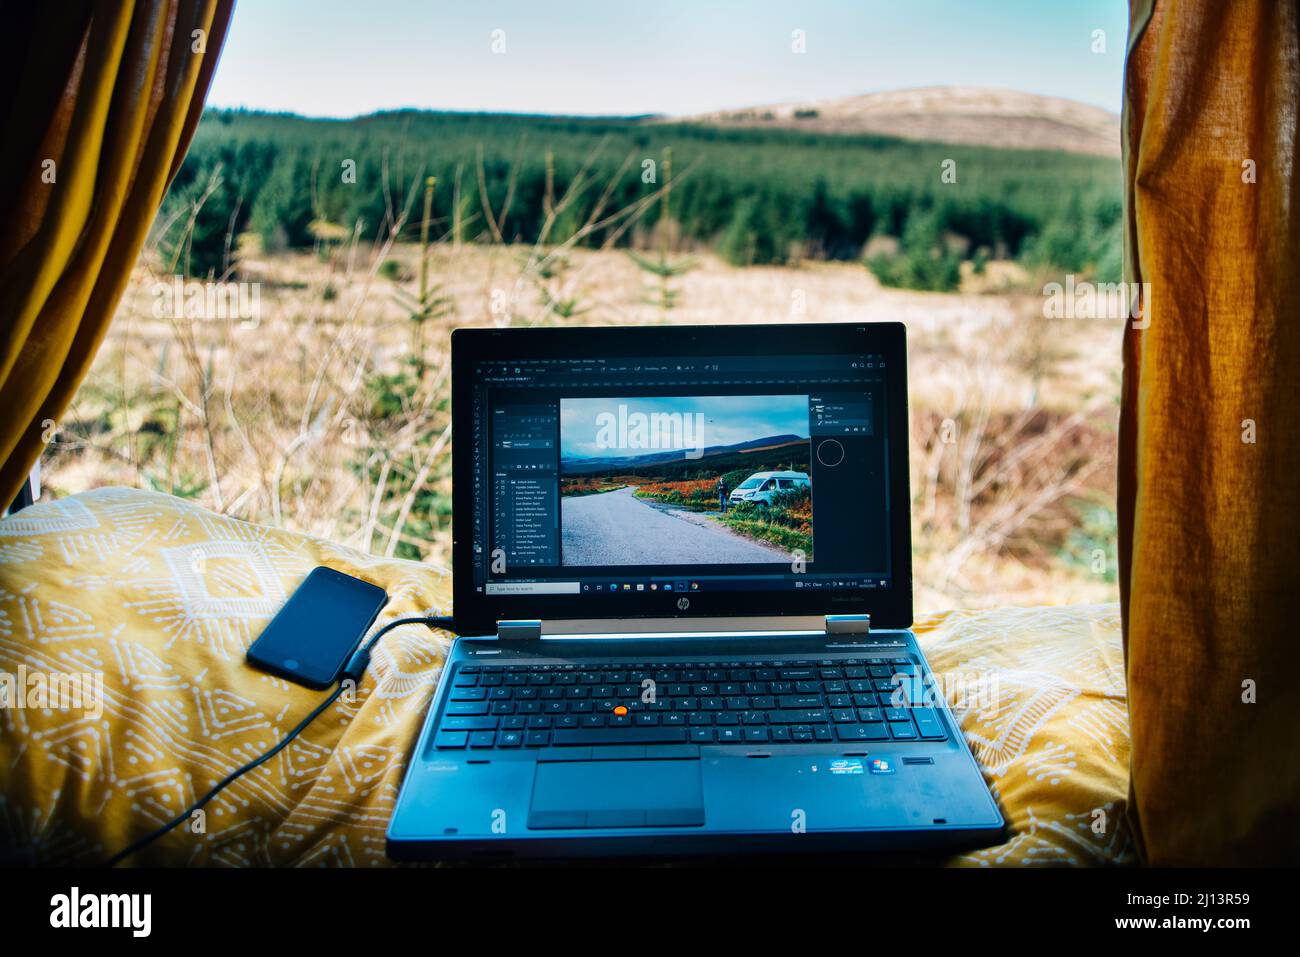 Lavorare da un campervan in viaggio la vita di un nomade digitale. Computer portatile e telefono in mostra con vista sulla campagna scozzese. Fotografia di viaggio Foto Stock